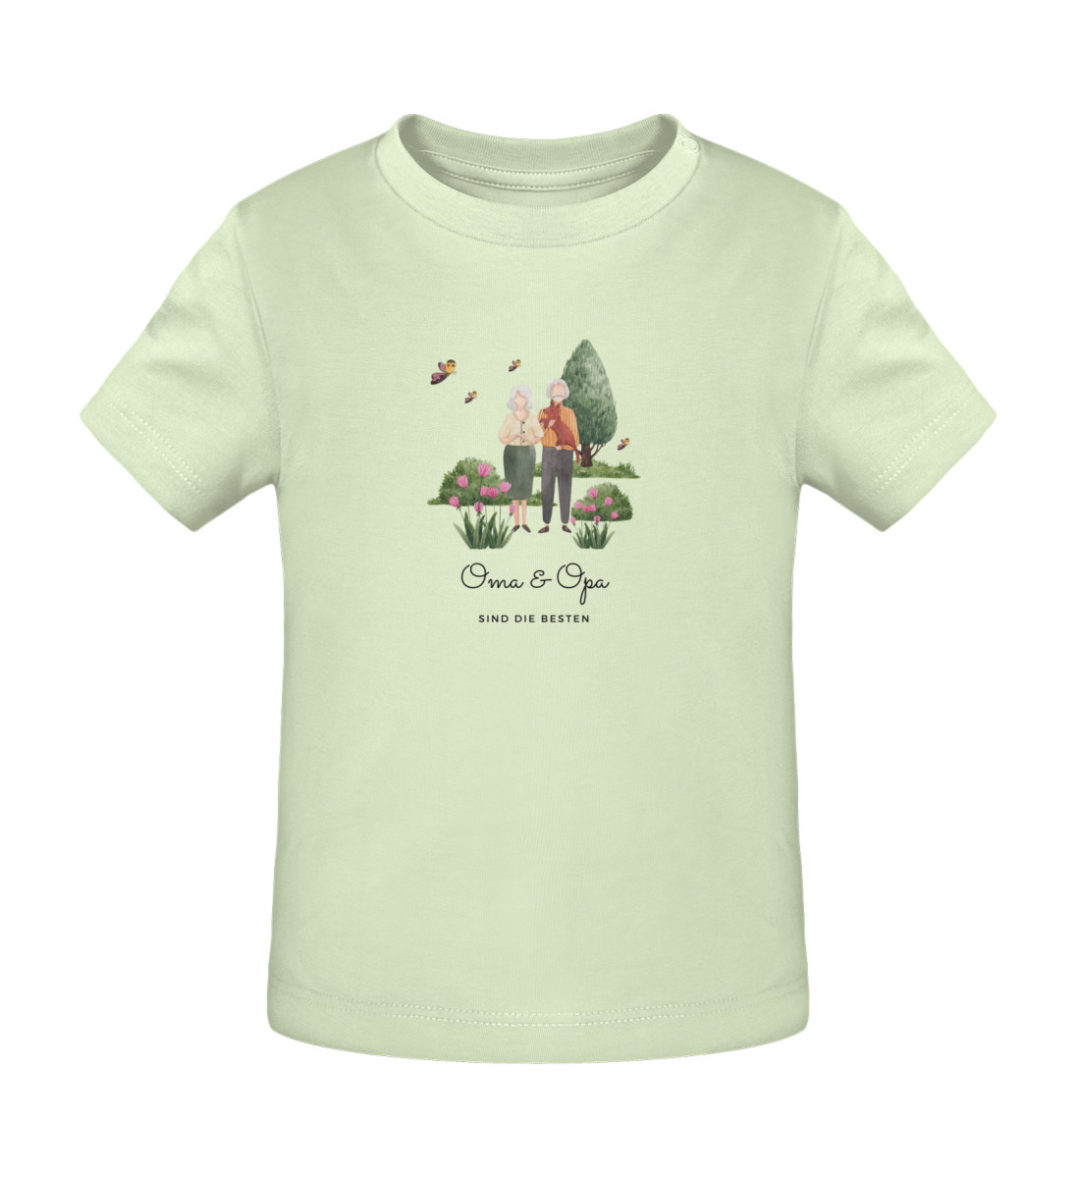 Oma & Opa sind die besten - Baby Creator T-Shirt ST/ST-7105